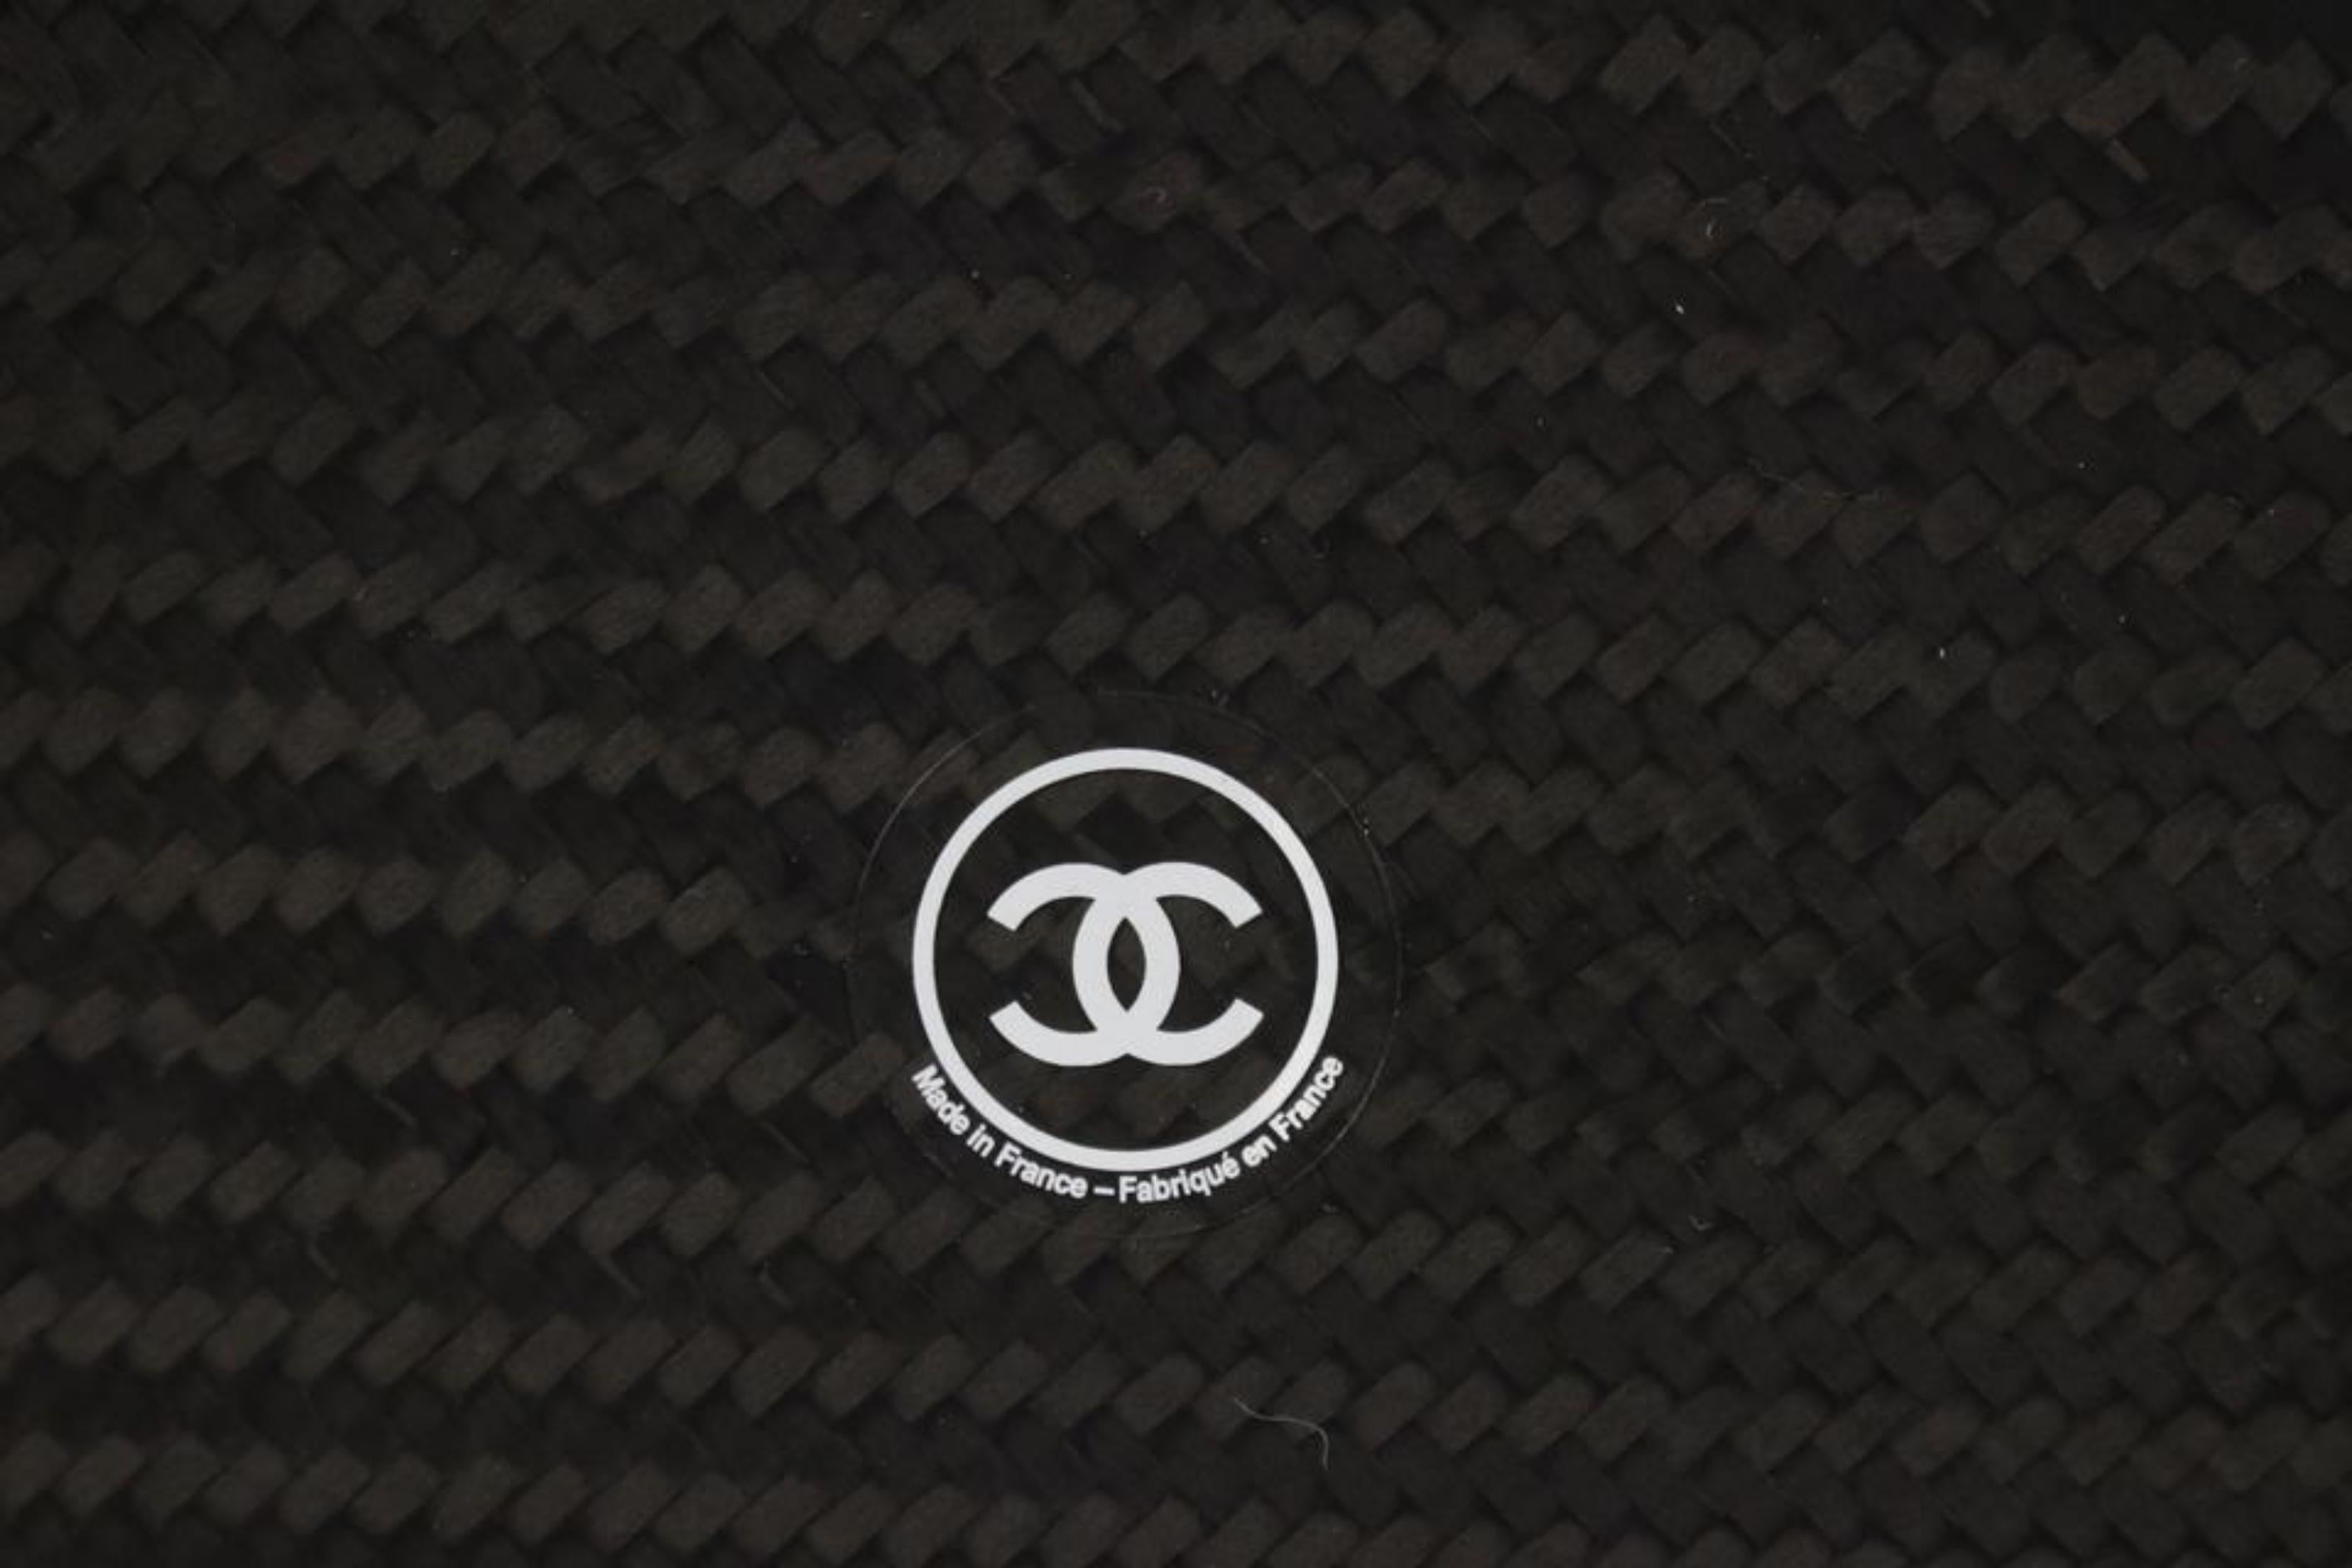 Chanel 22S Black Carbon Fiber CC Logo Frisbee Disc  34ck311s For Sale 4